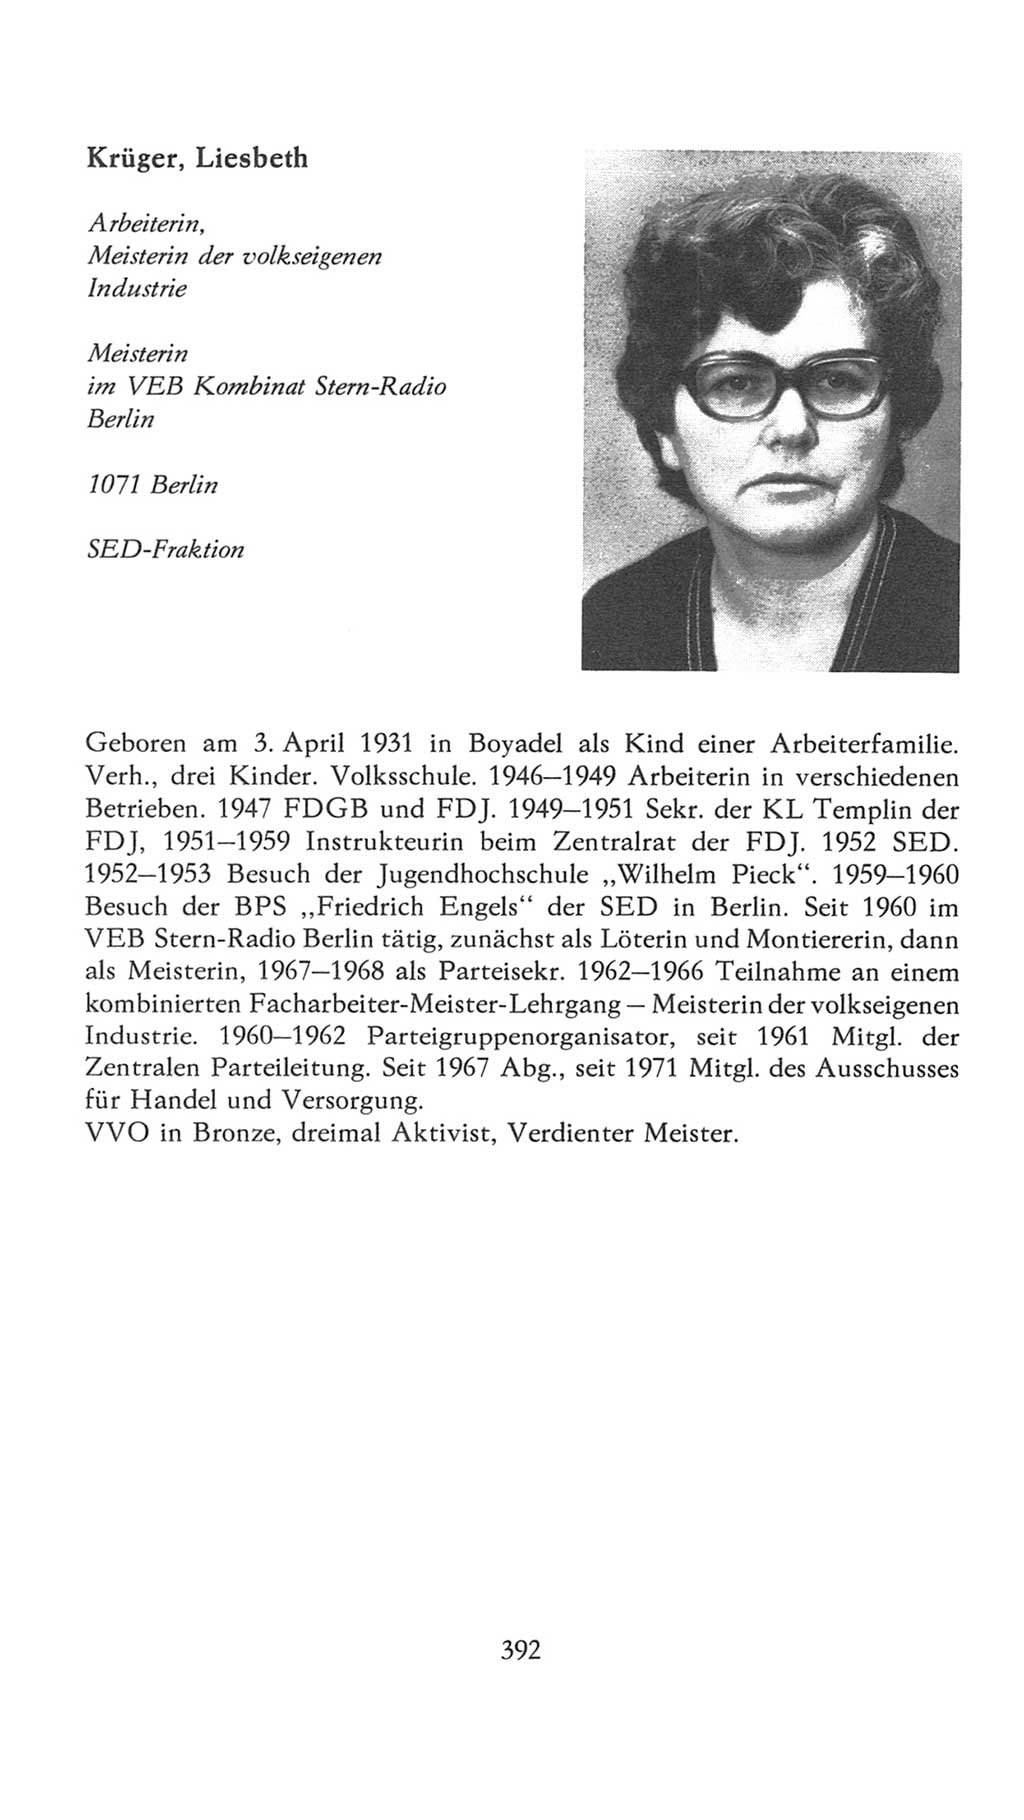 Volkskammer (VK) der Deutschen Demokratischen Republik (DDR), 7. Wahlperiode 1976-1981, Seite 392 (VK. DDR 7. WP. 1976-1981, S. 392)